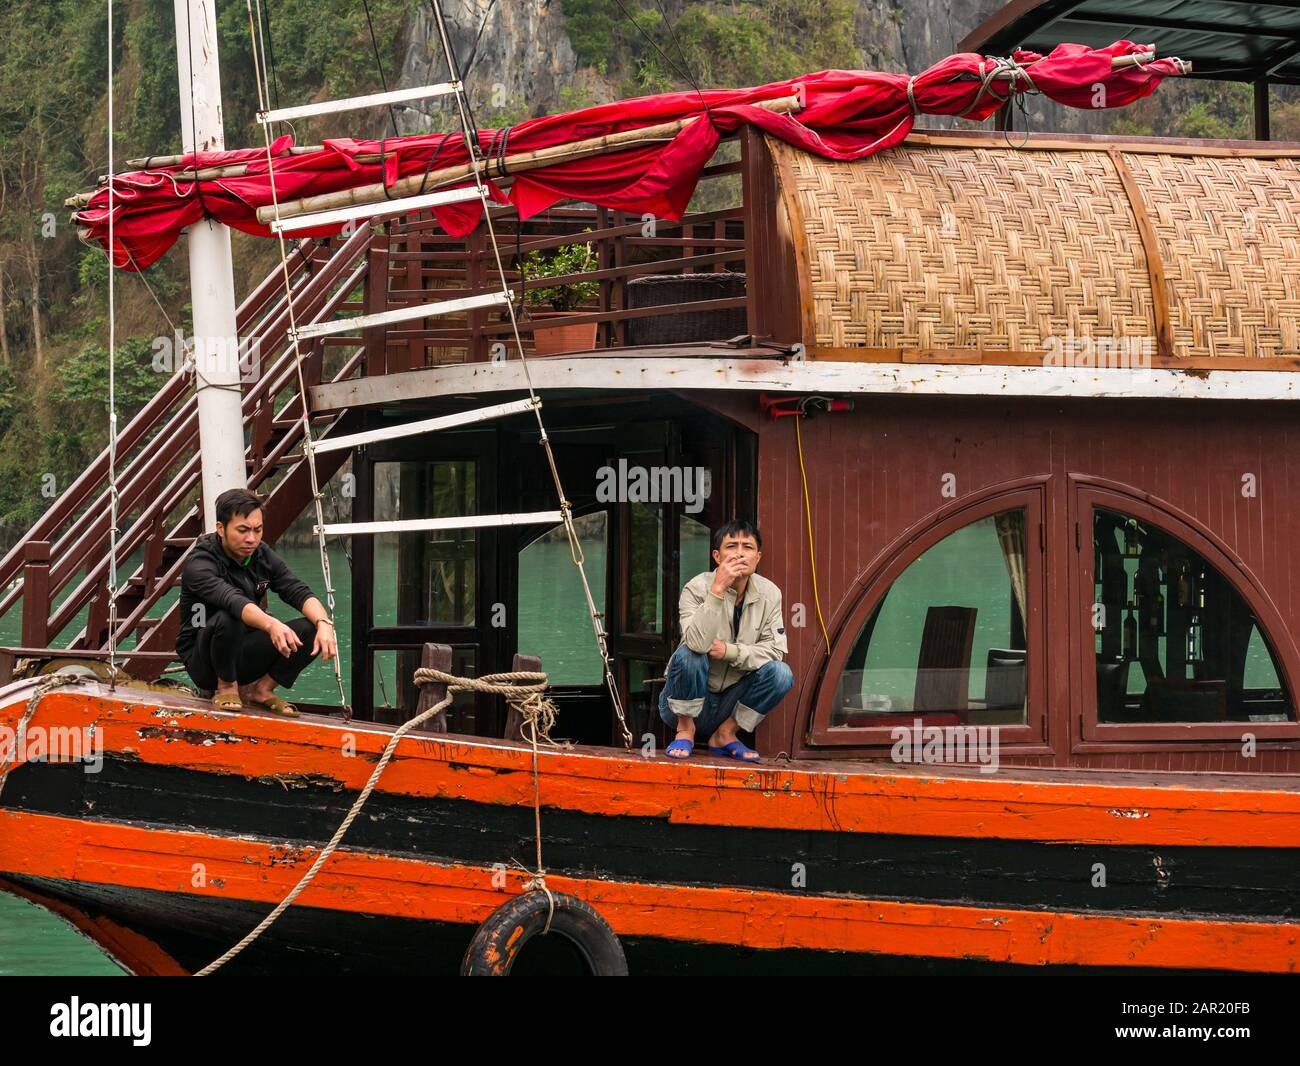 Des hommes asiatiques qui se coutent et fument sur un bateau touristique, l'île Cat Ba, Lan Ha Bay, Vietnam, Asie Banque D'Images